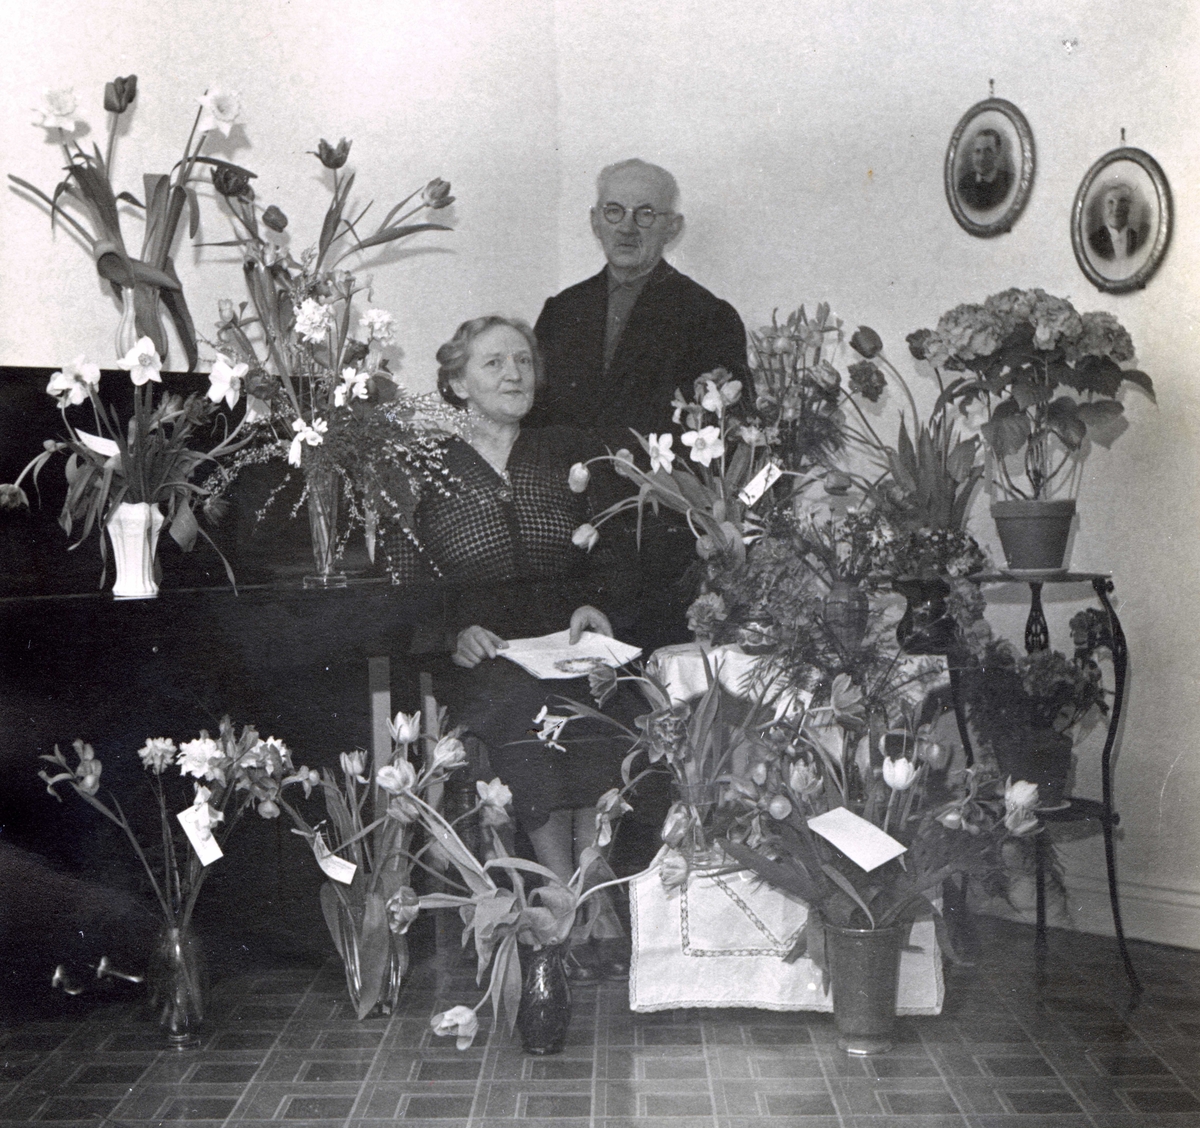 Judit Johansson fyller 60 år och uppvaktas med blomster i Vommedal Östergård "Olas" år 1953. Brevid står maken Gustav Johansson. Judit föddes 1893 i Bölet och Gustav föddes 1886 i Fässberg. De gifte sig 6/6 1917 och drev jordbruk i Vommedal.